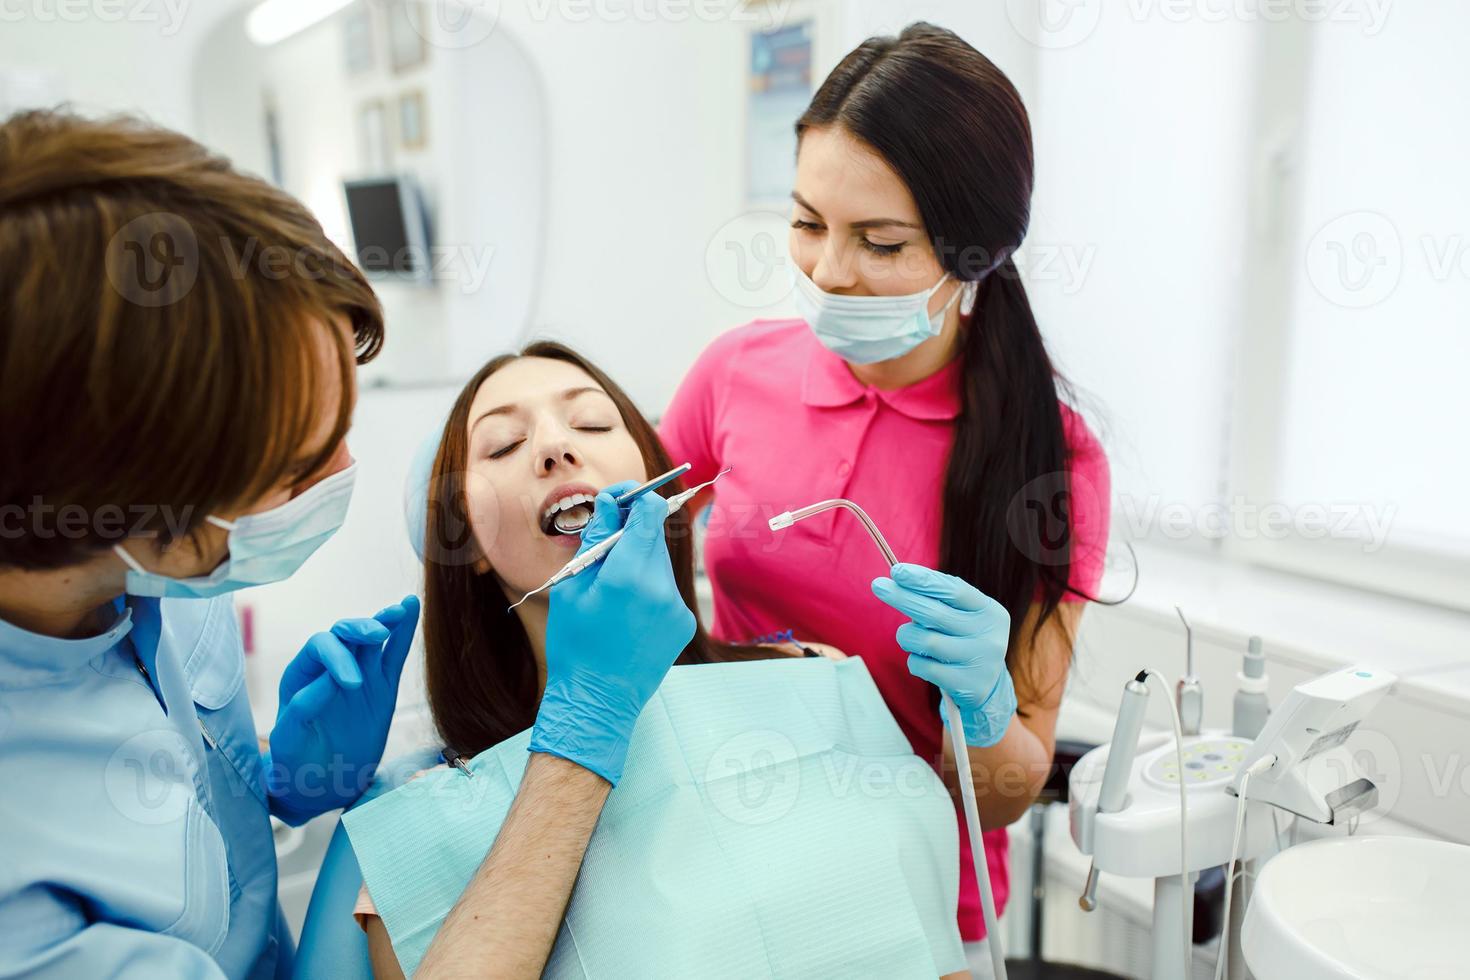 inspectie van de tanden van de meisje met de helpen van een spiegel foto